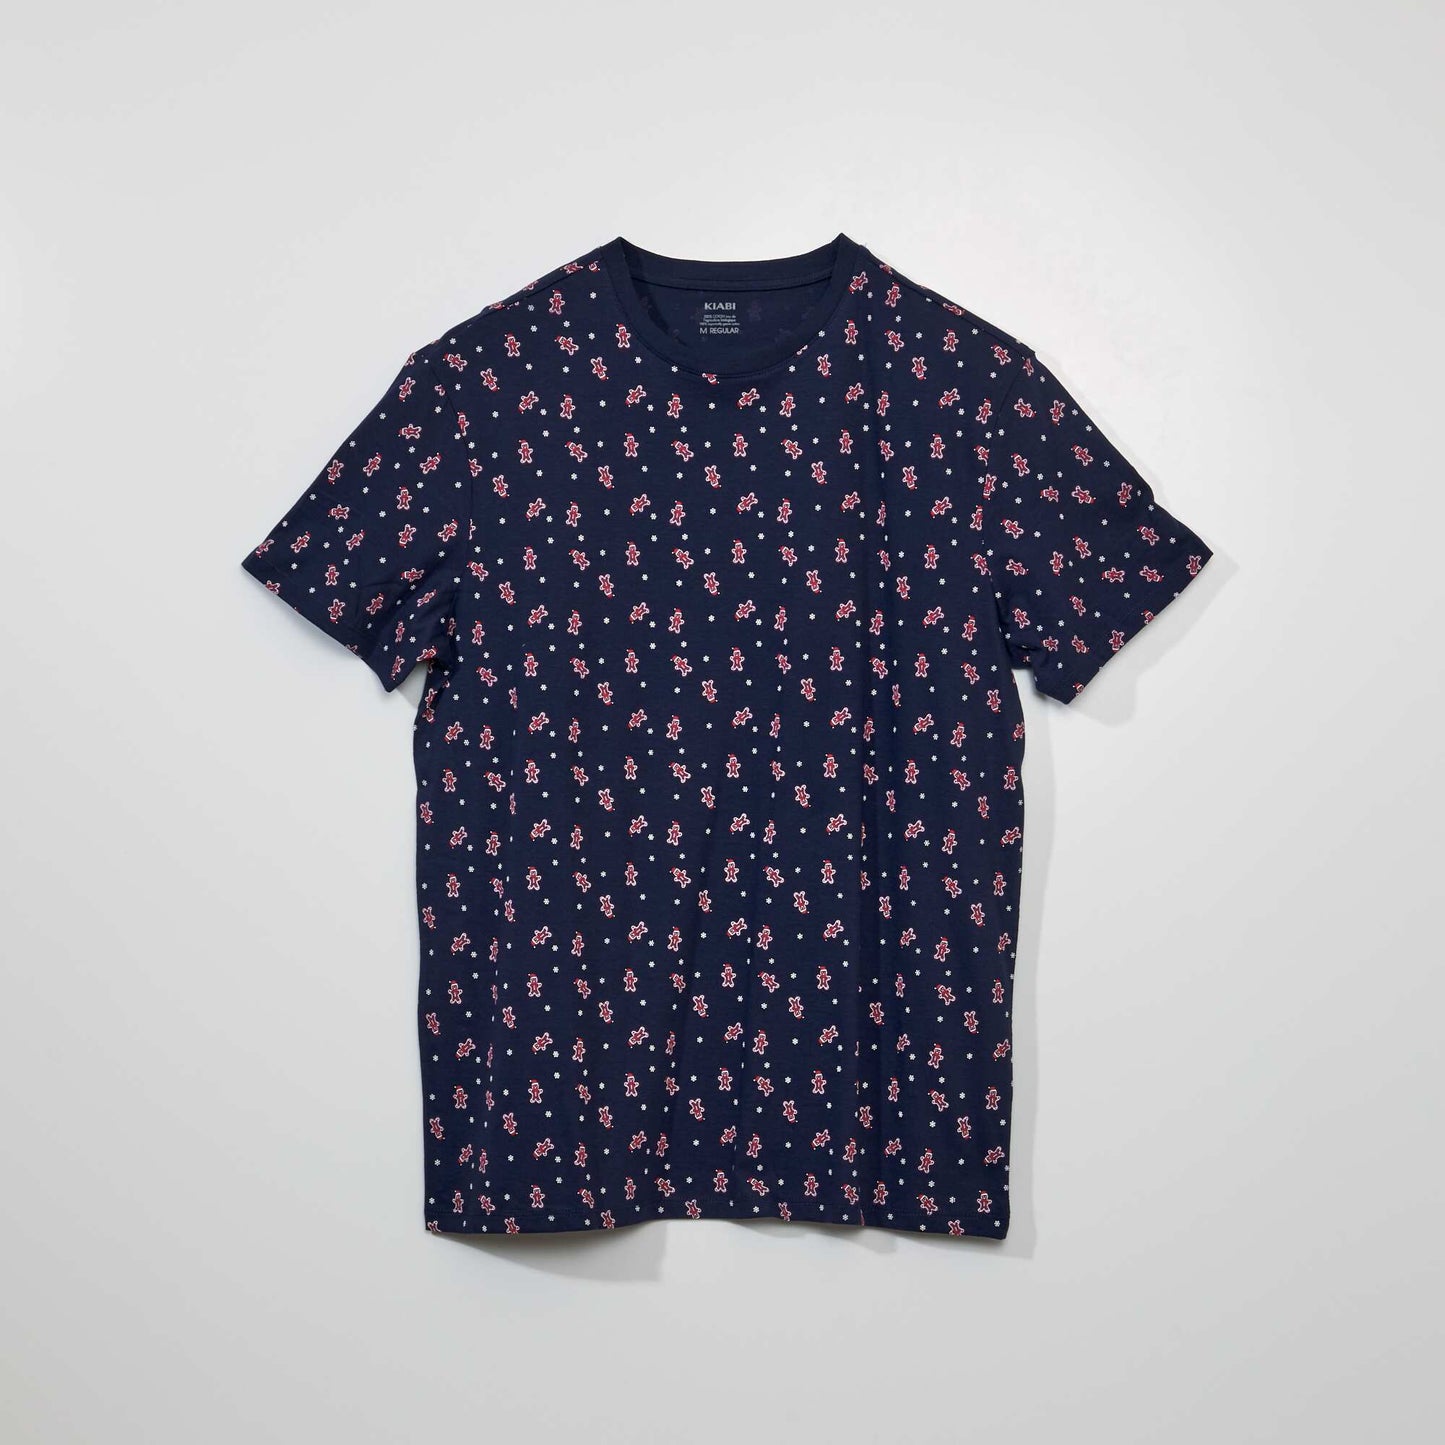 Tee-shirt manches courtes imprimé 'Noël' Bleu imprimé